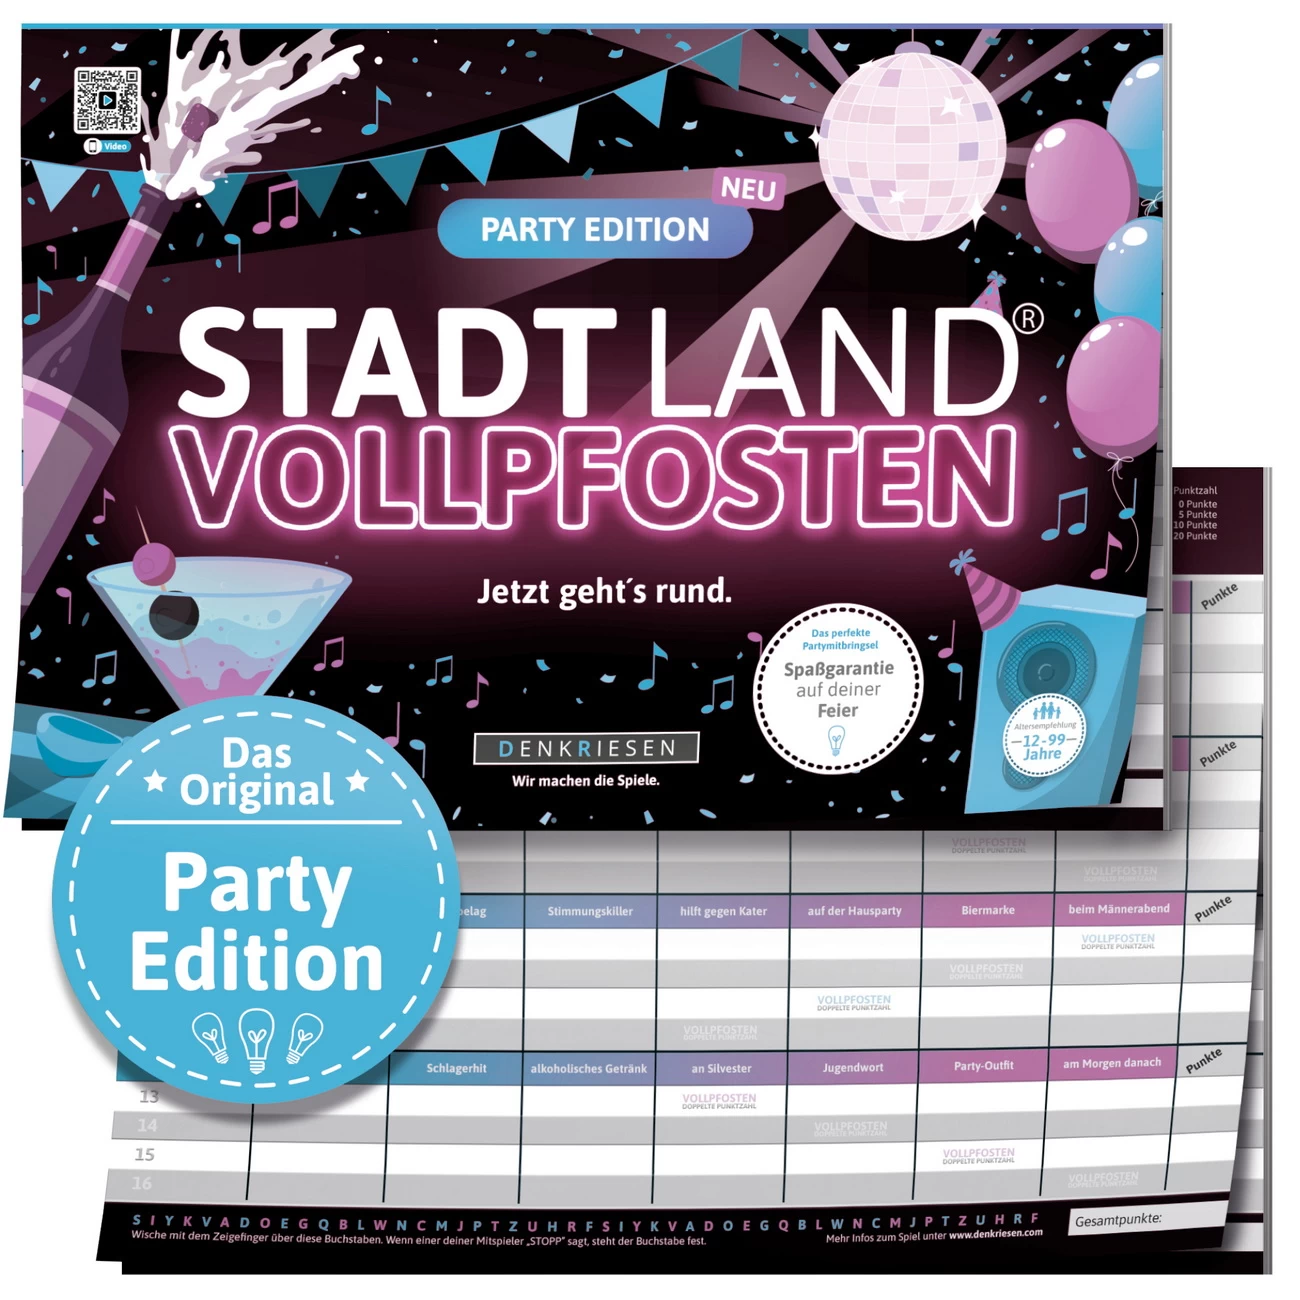 Party Edition STADT LAND VOLLPFOSTEN